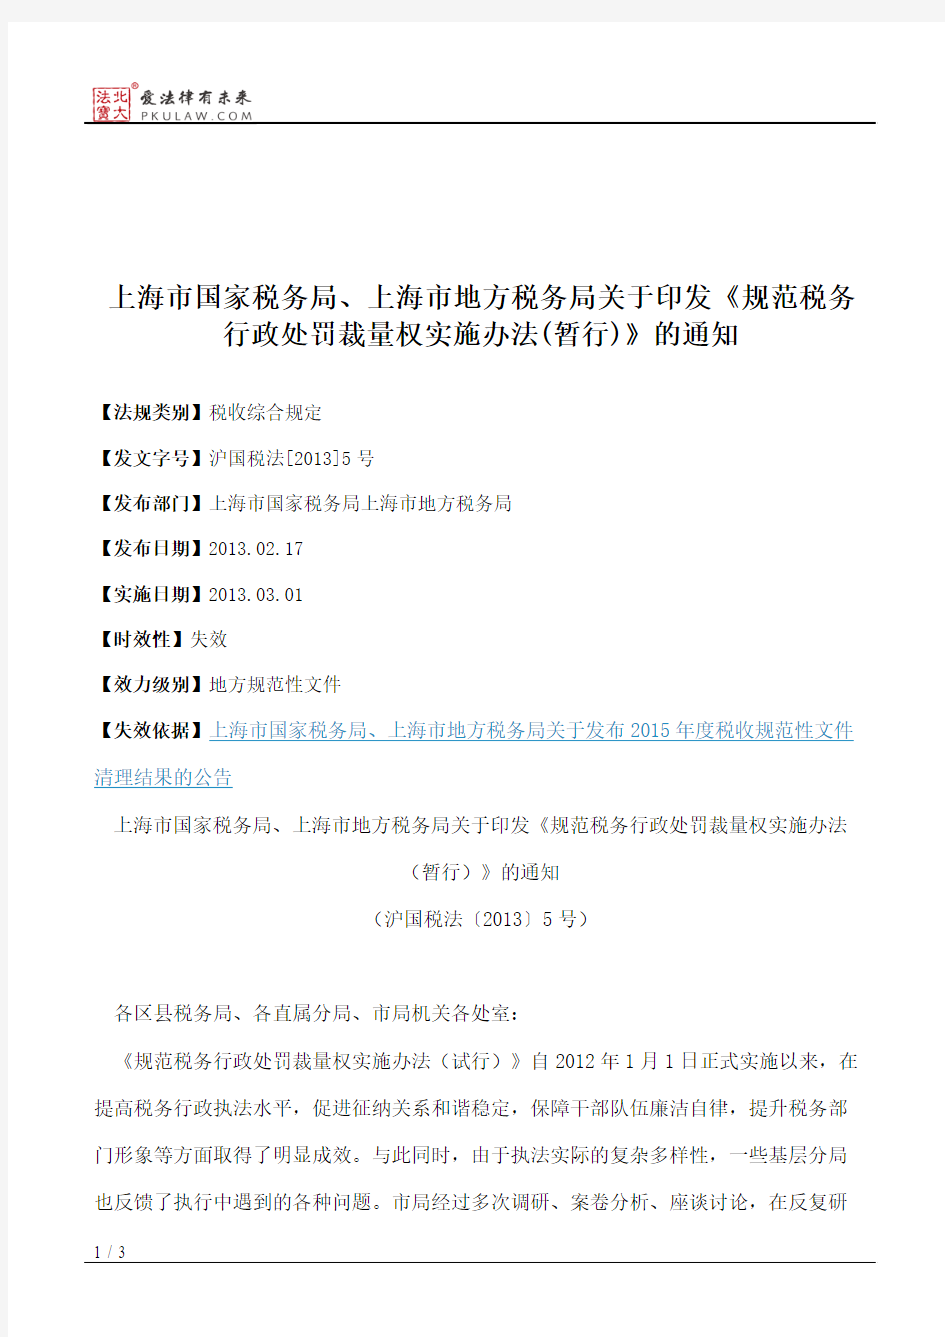 上海市国家税务局、上海市地方税务局关于印发《规范税务行政处罚